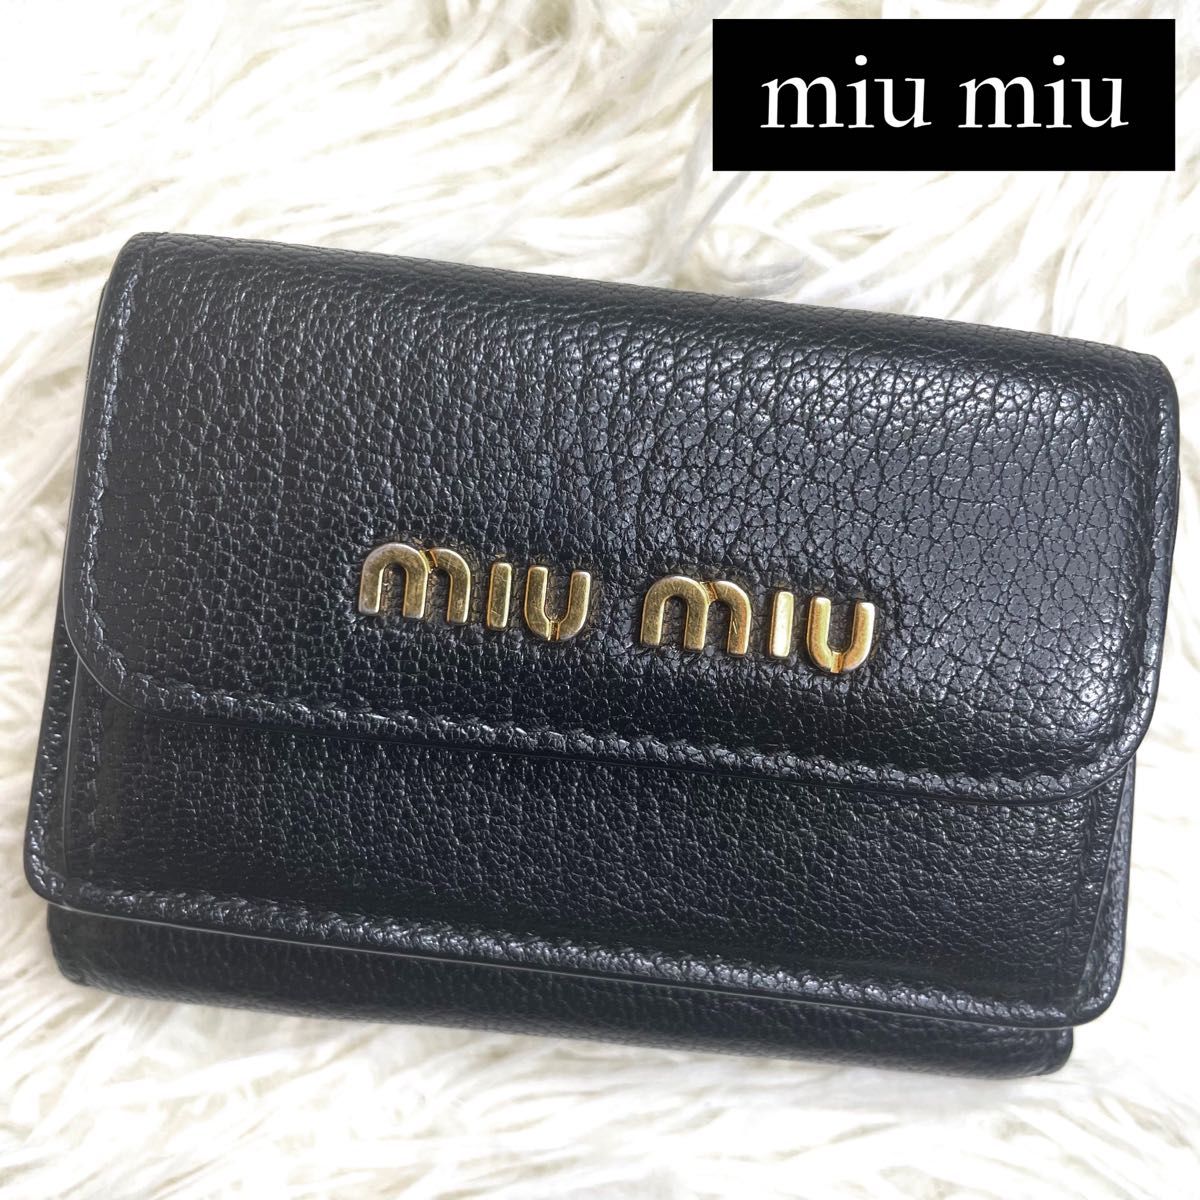 極美品 / miu miu ミュウミュウ マドラストリフォールドミニウォレット 三つ折り財布 ミニ財布 ブラック 5MH020